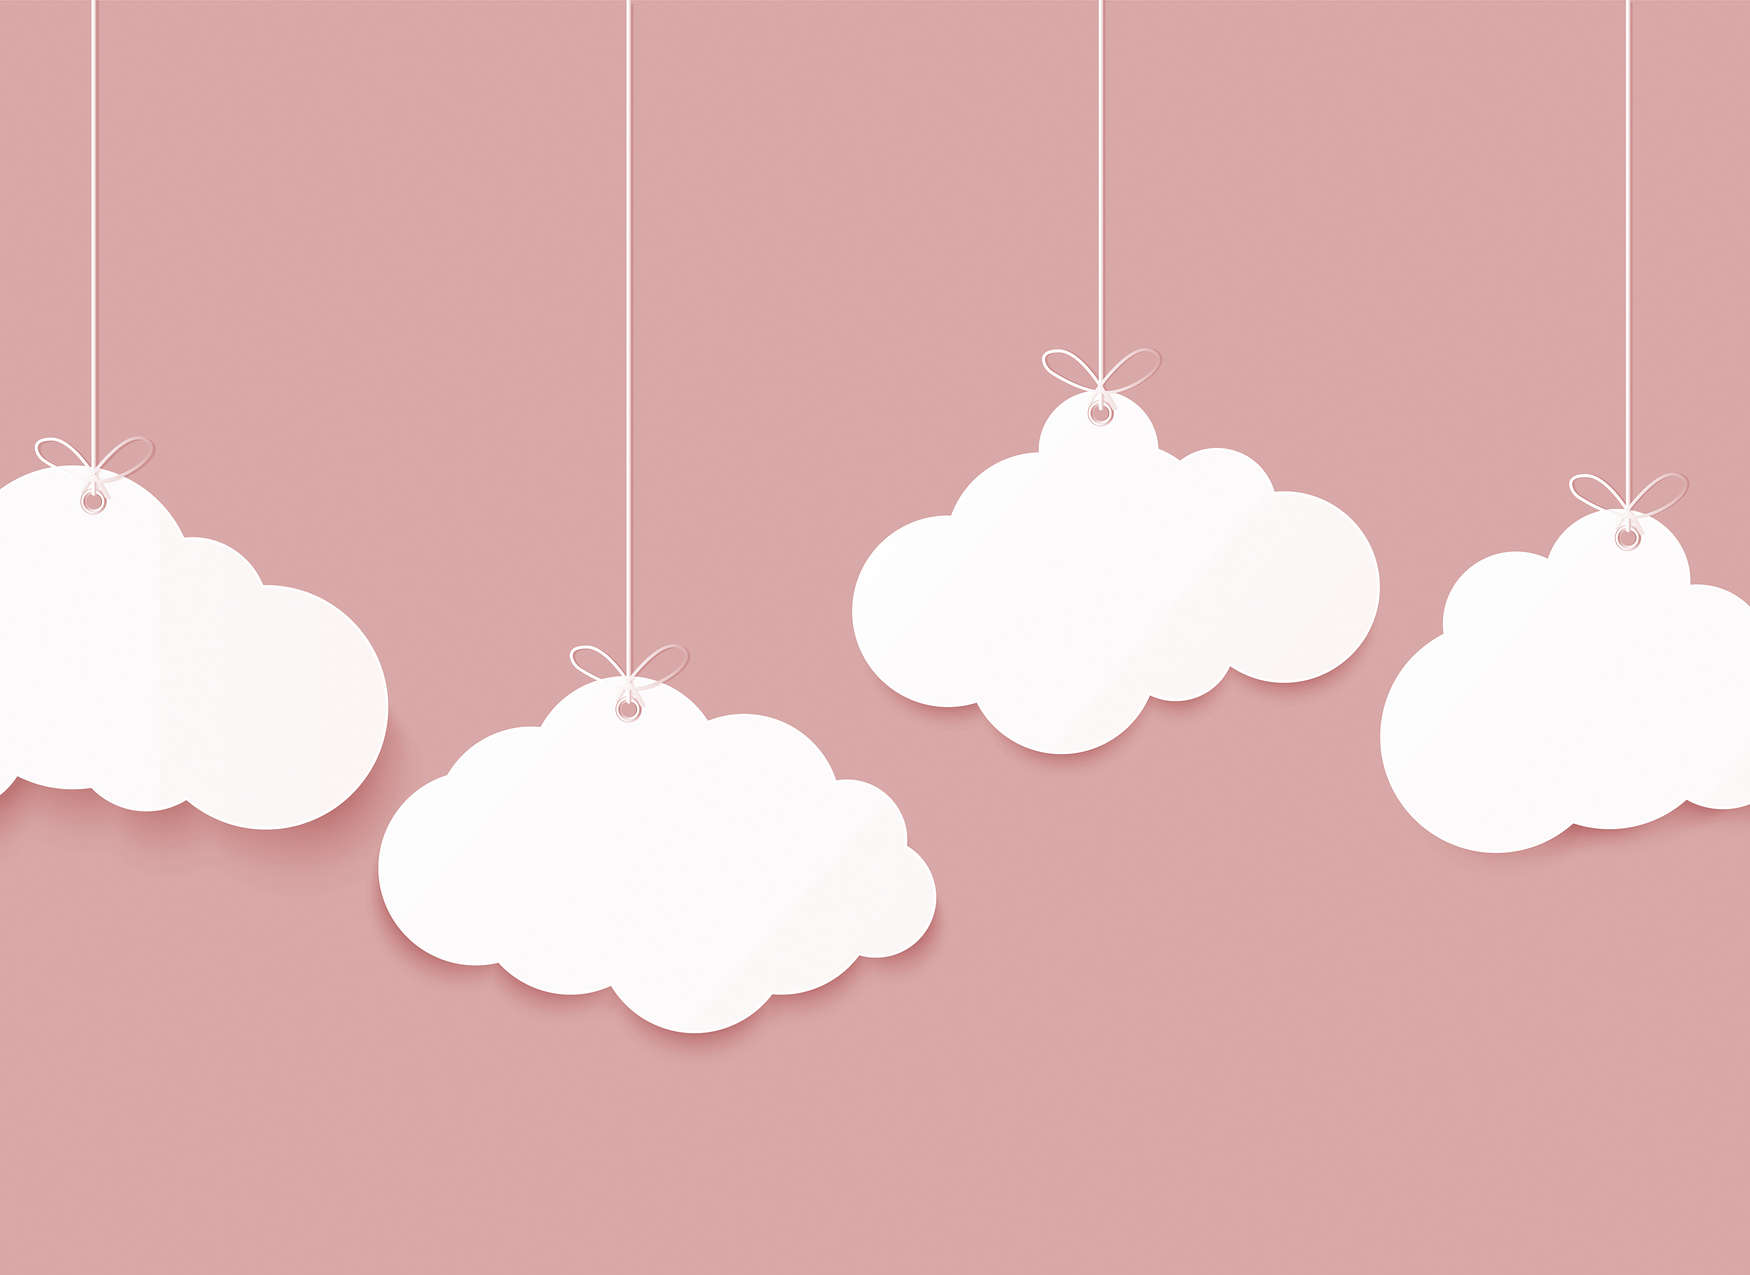             Papier peint nuages pour chambre d'enfant - rose, blanc
        